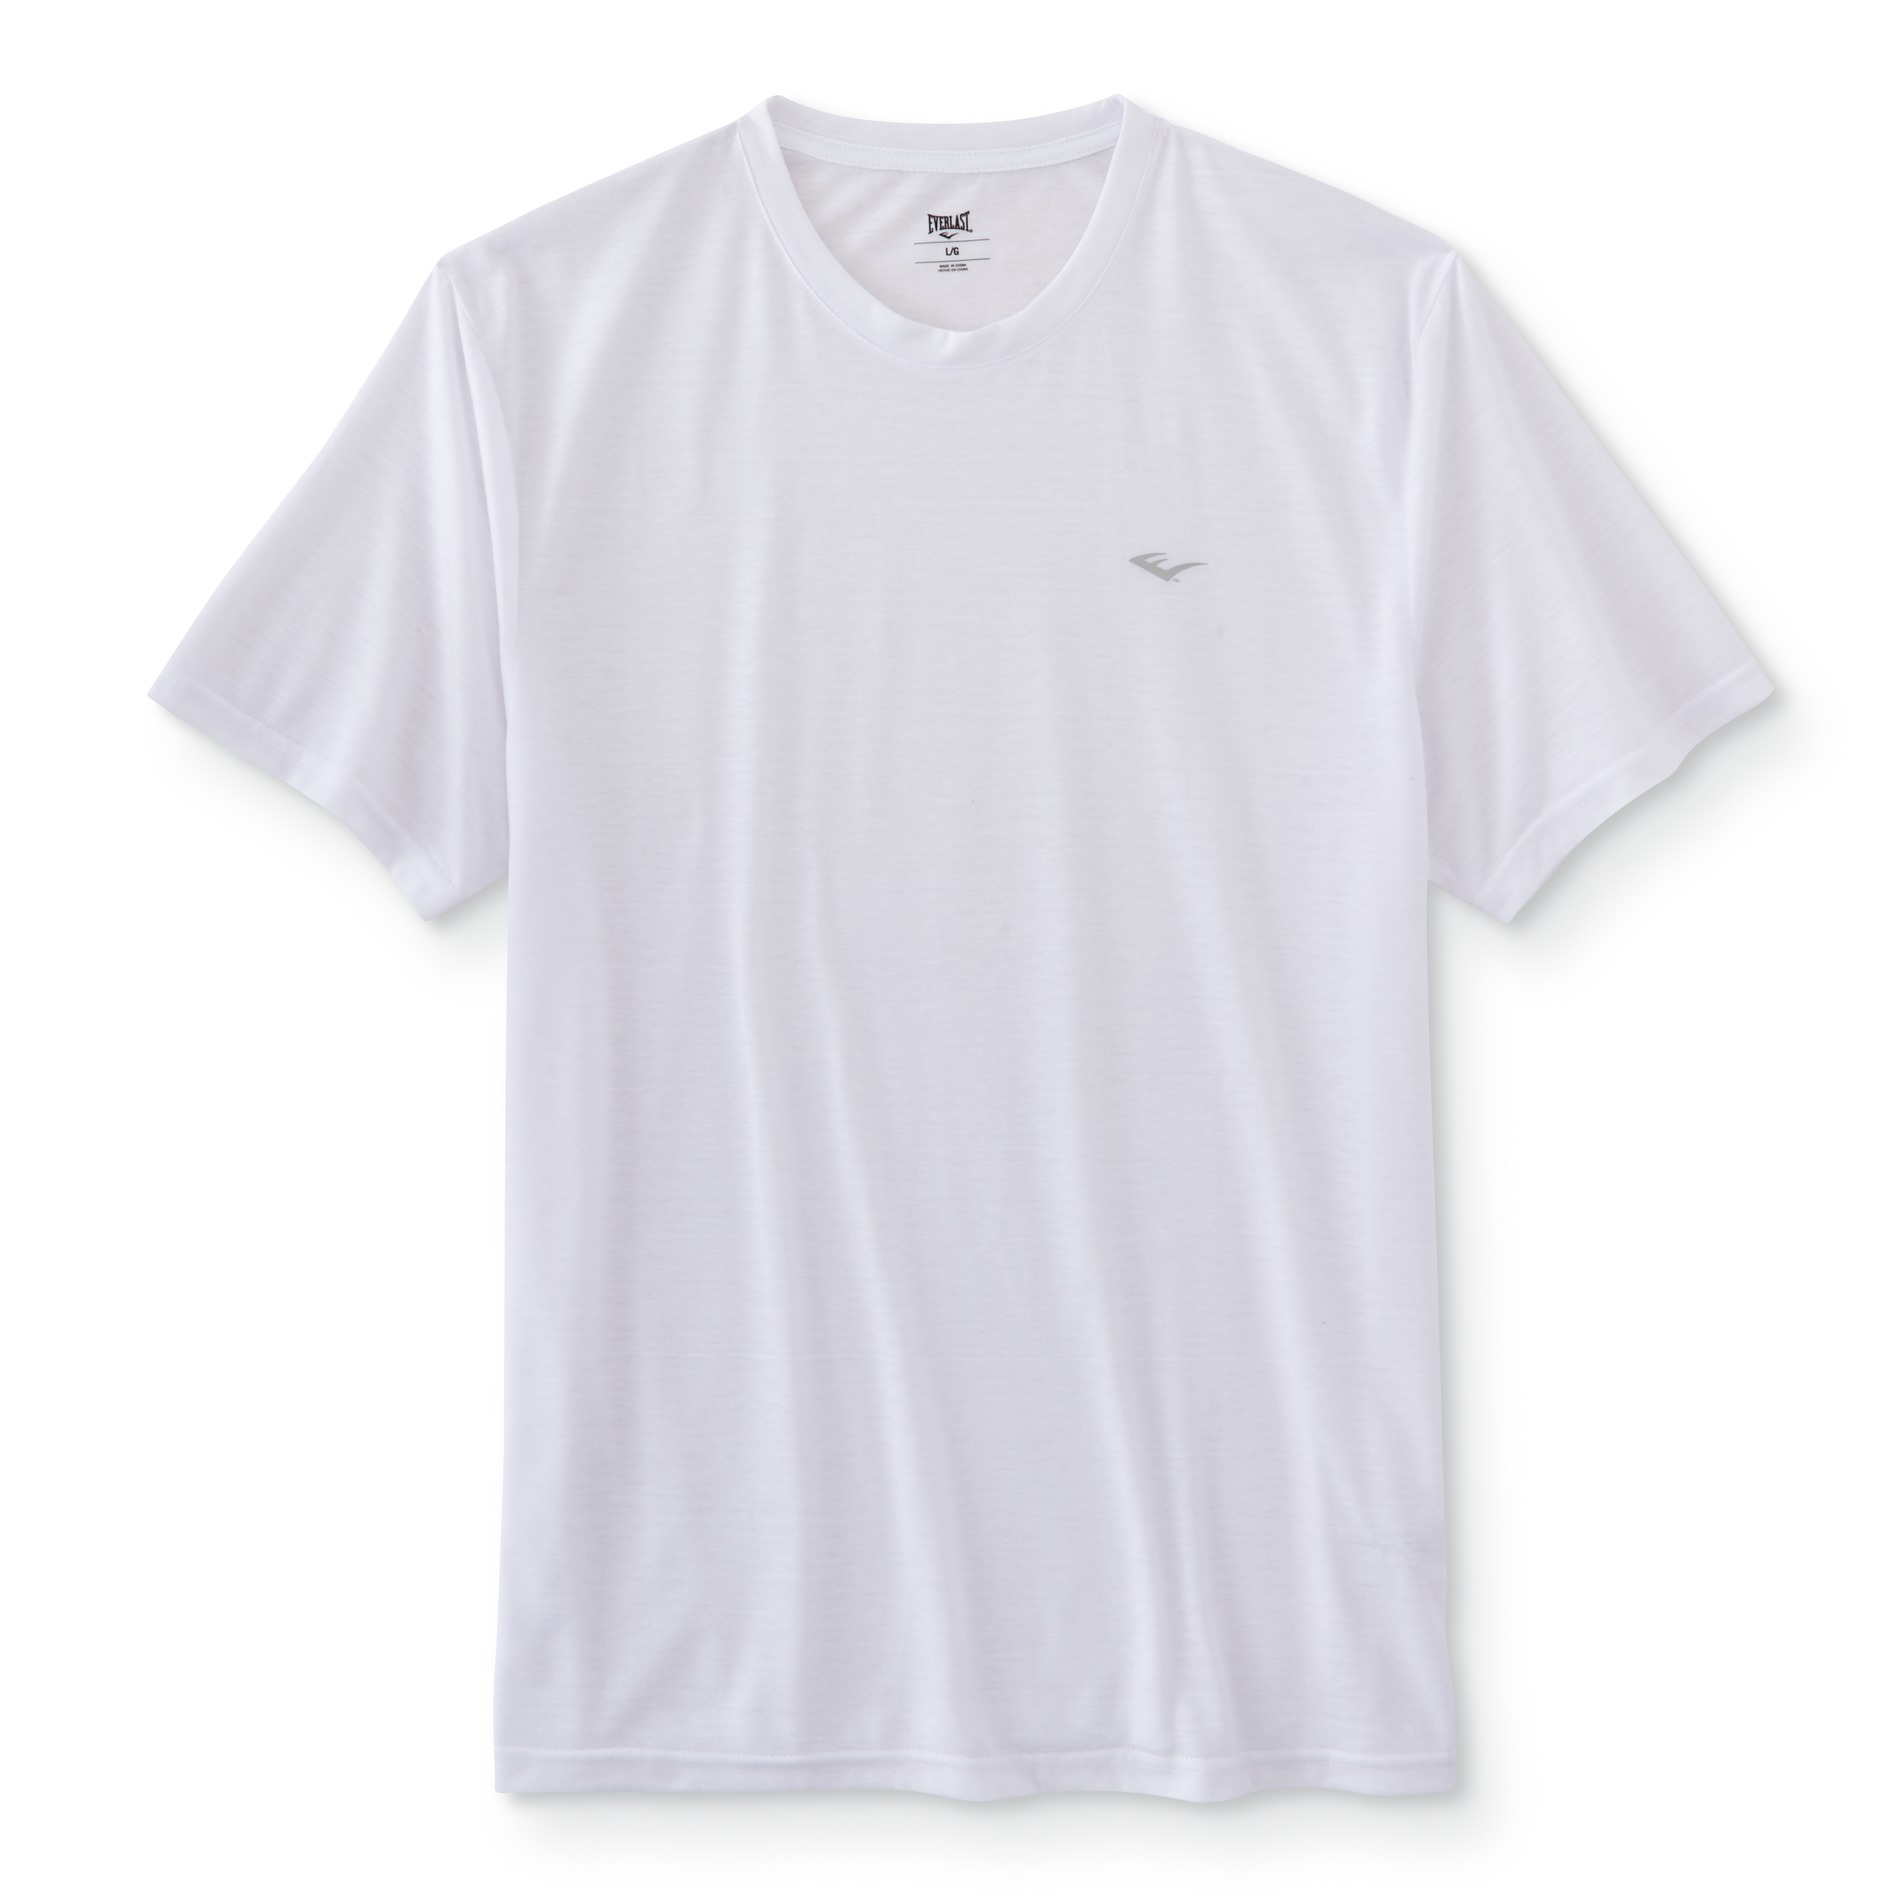 EVERLAST, White Men's T-shirt